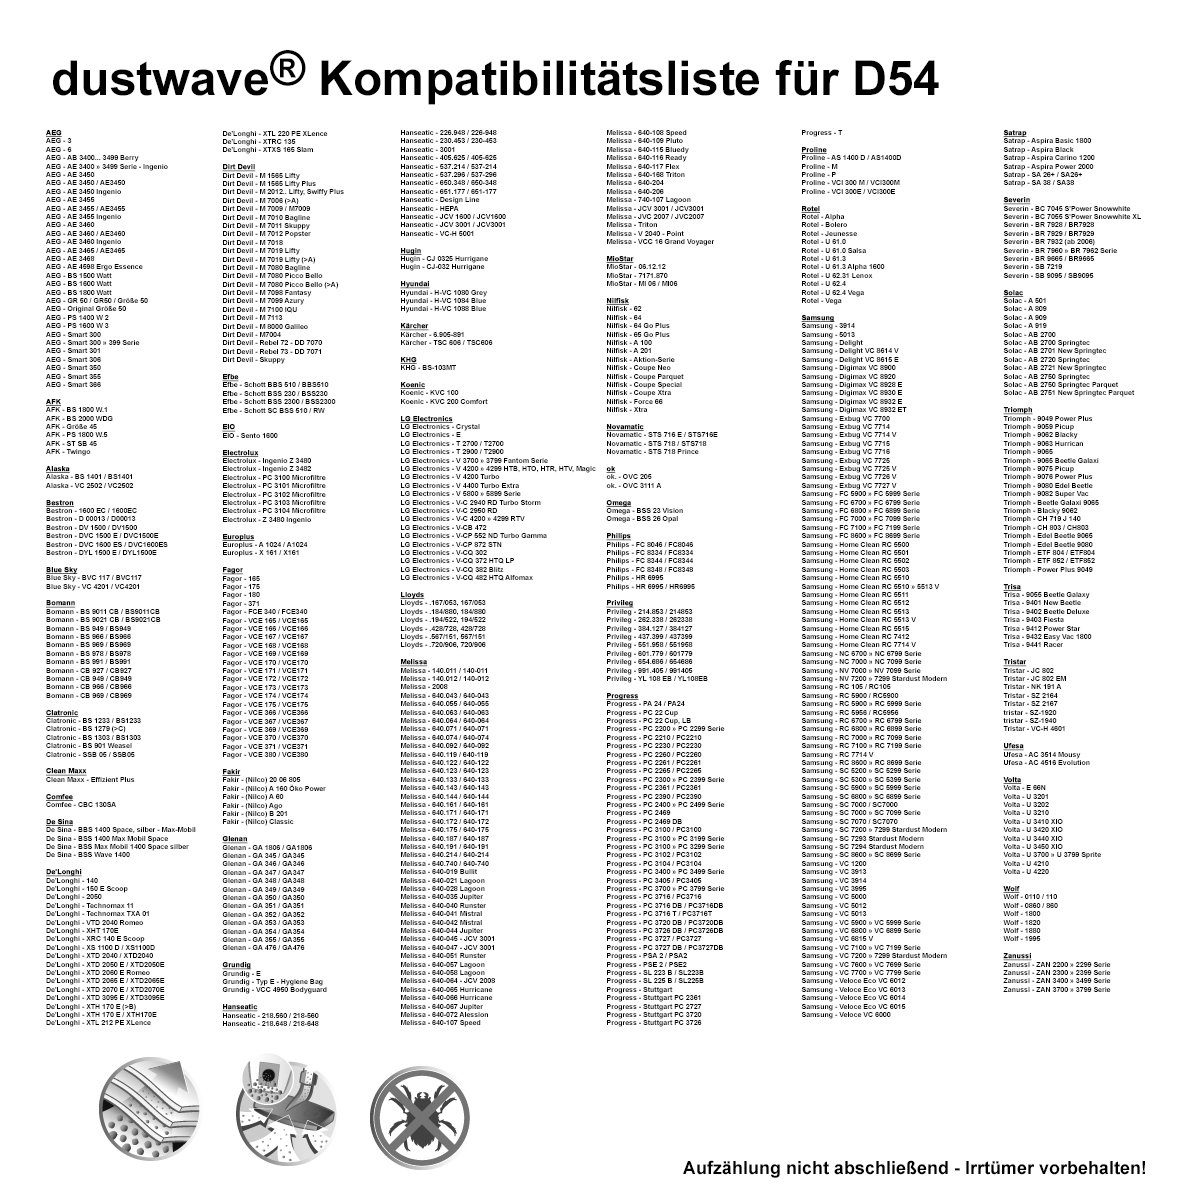 1 Dustwave 15x15cm St., Hepa-Filter für passend + 1 Test-Set, Staubsaugerbeutel 700, (ca. Staubsaugerbeutel Comfee zuschneidbar) 1 CVCB - Test-Set,